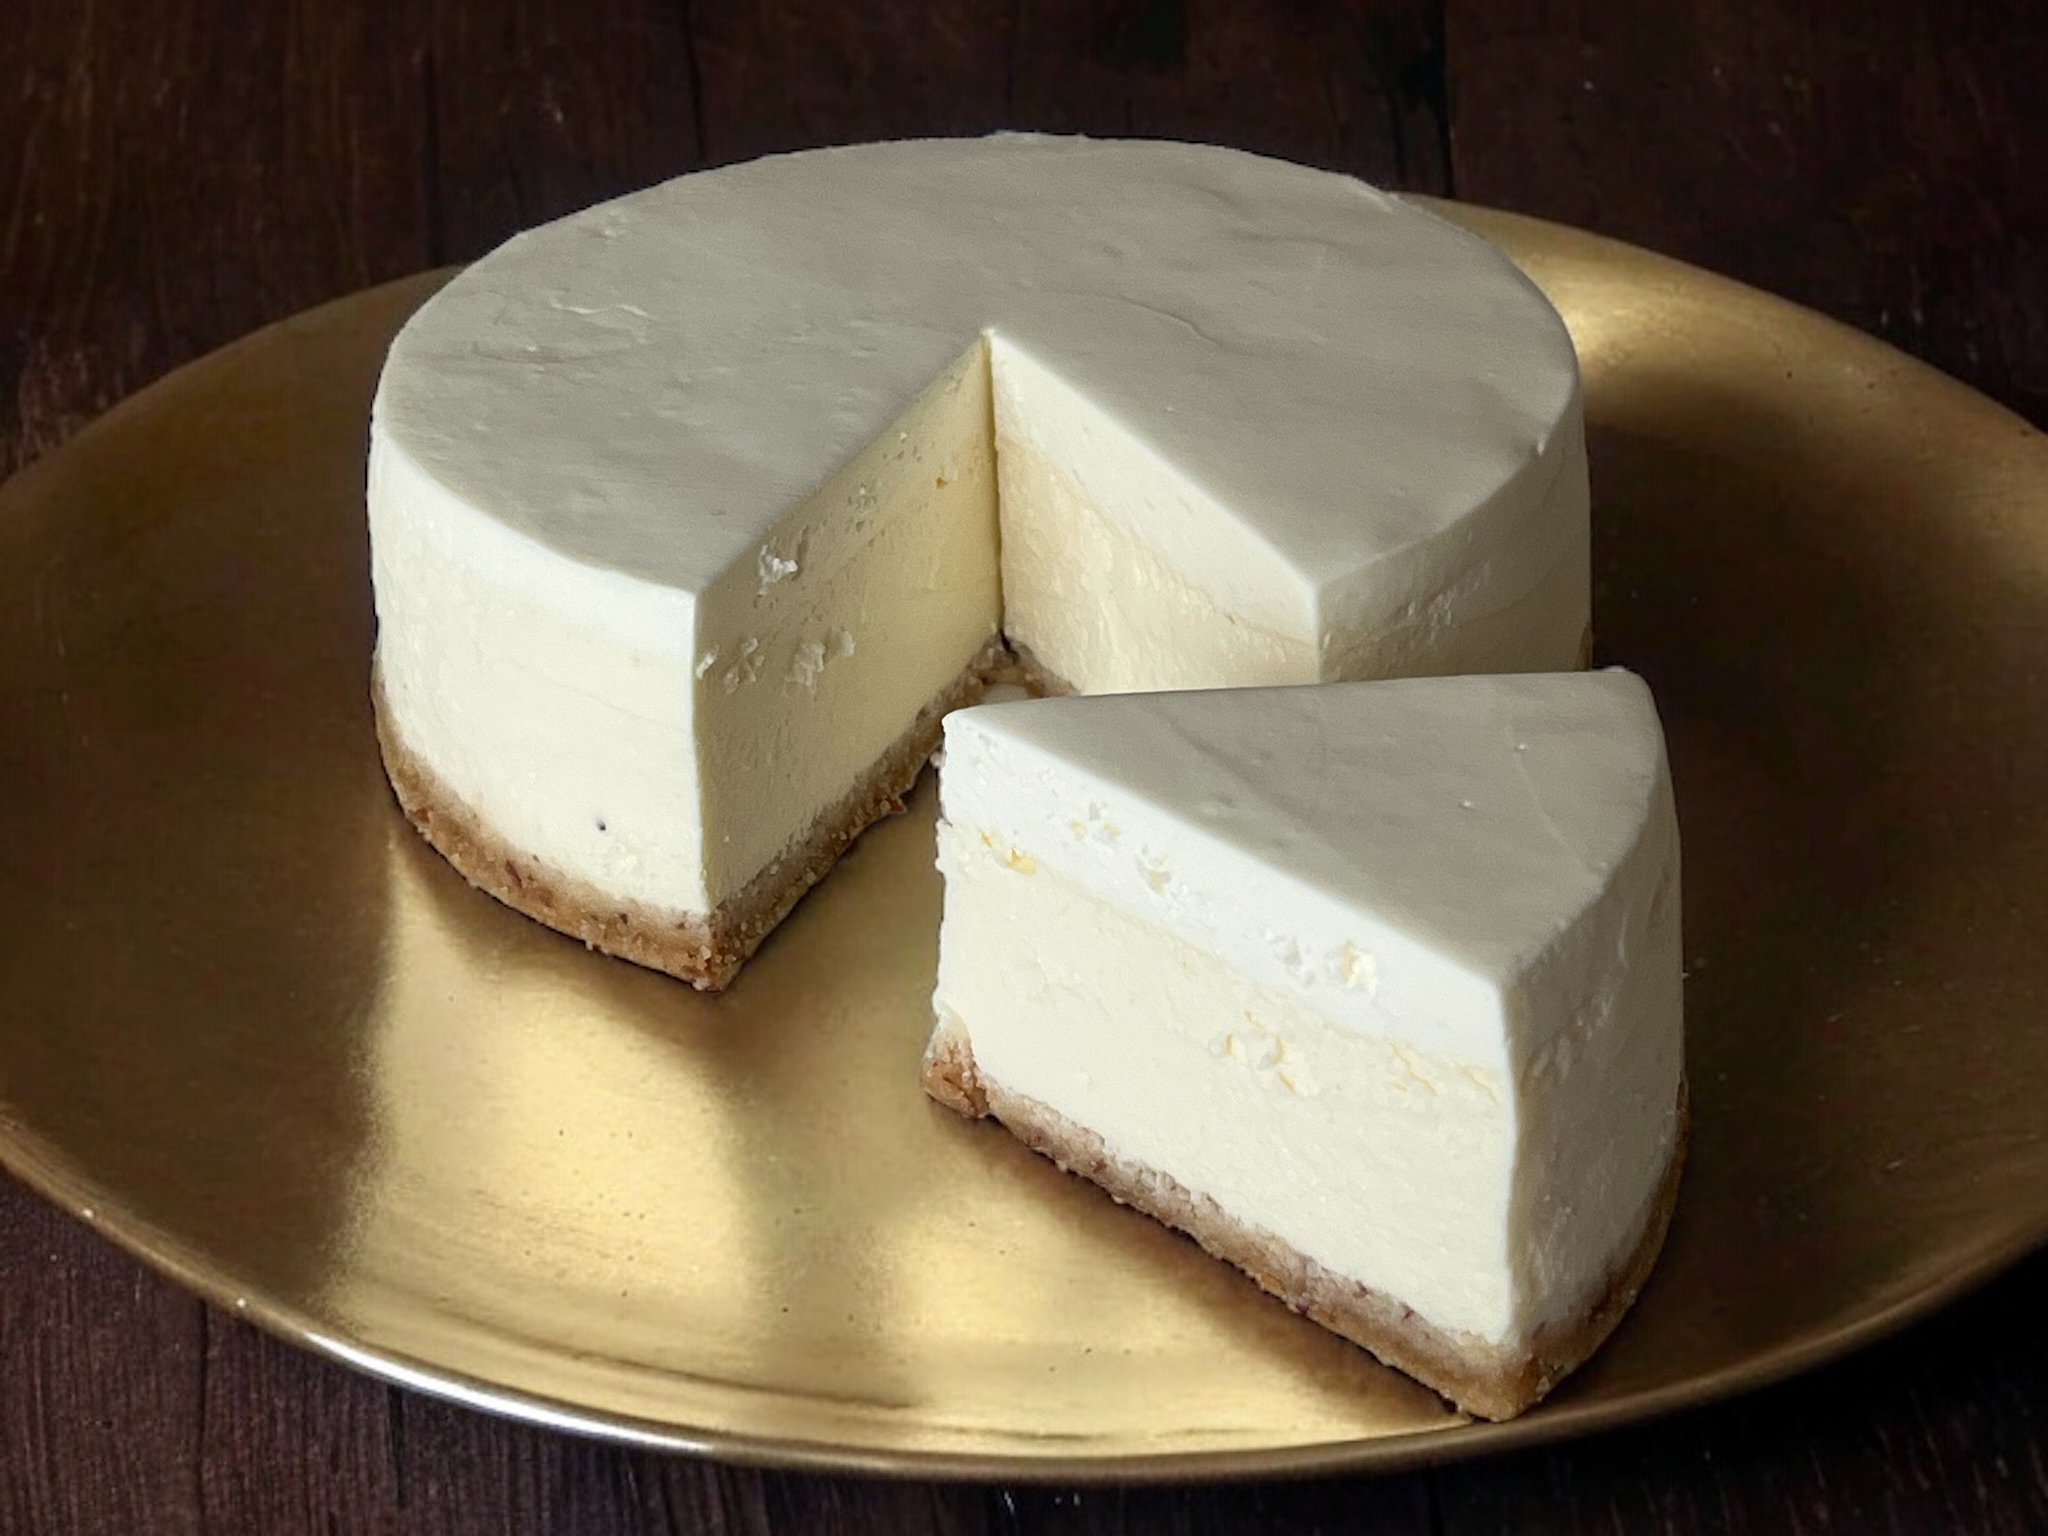 Keto cheesecake mini, sugarless and gluten-free